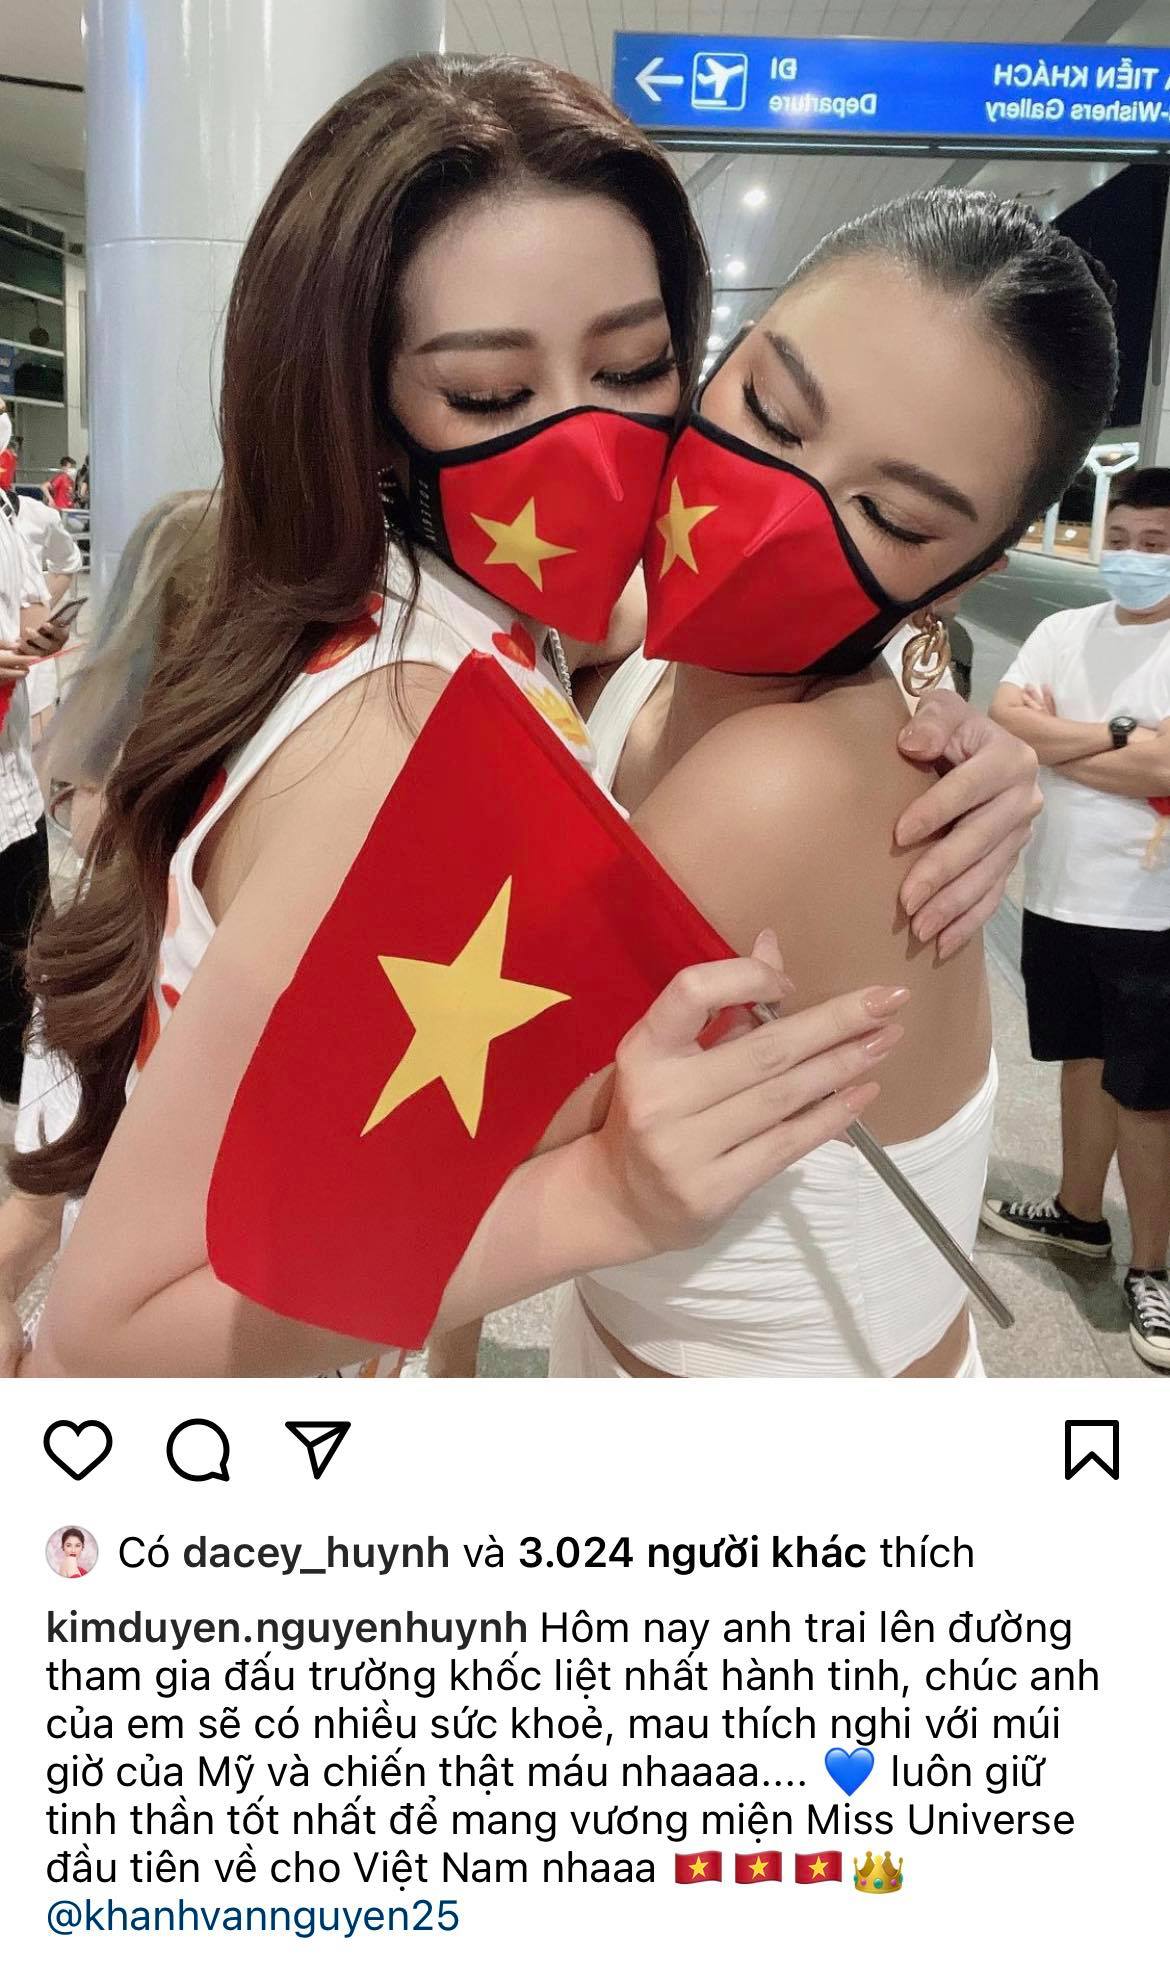 Dàn sao Việt hướng về Khánh Vân, nàng hậu đã chuyển 3 outfit và cập nhật hành trình đến Mỹ dự Miss Universe 2020 - Ảnh 10.